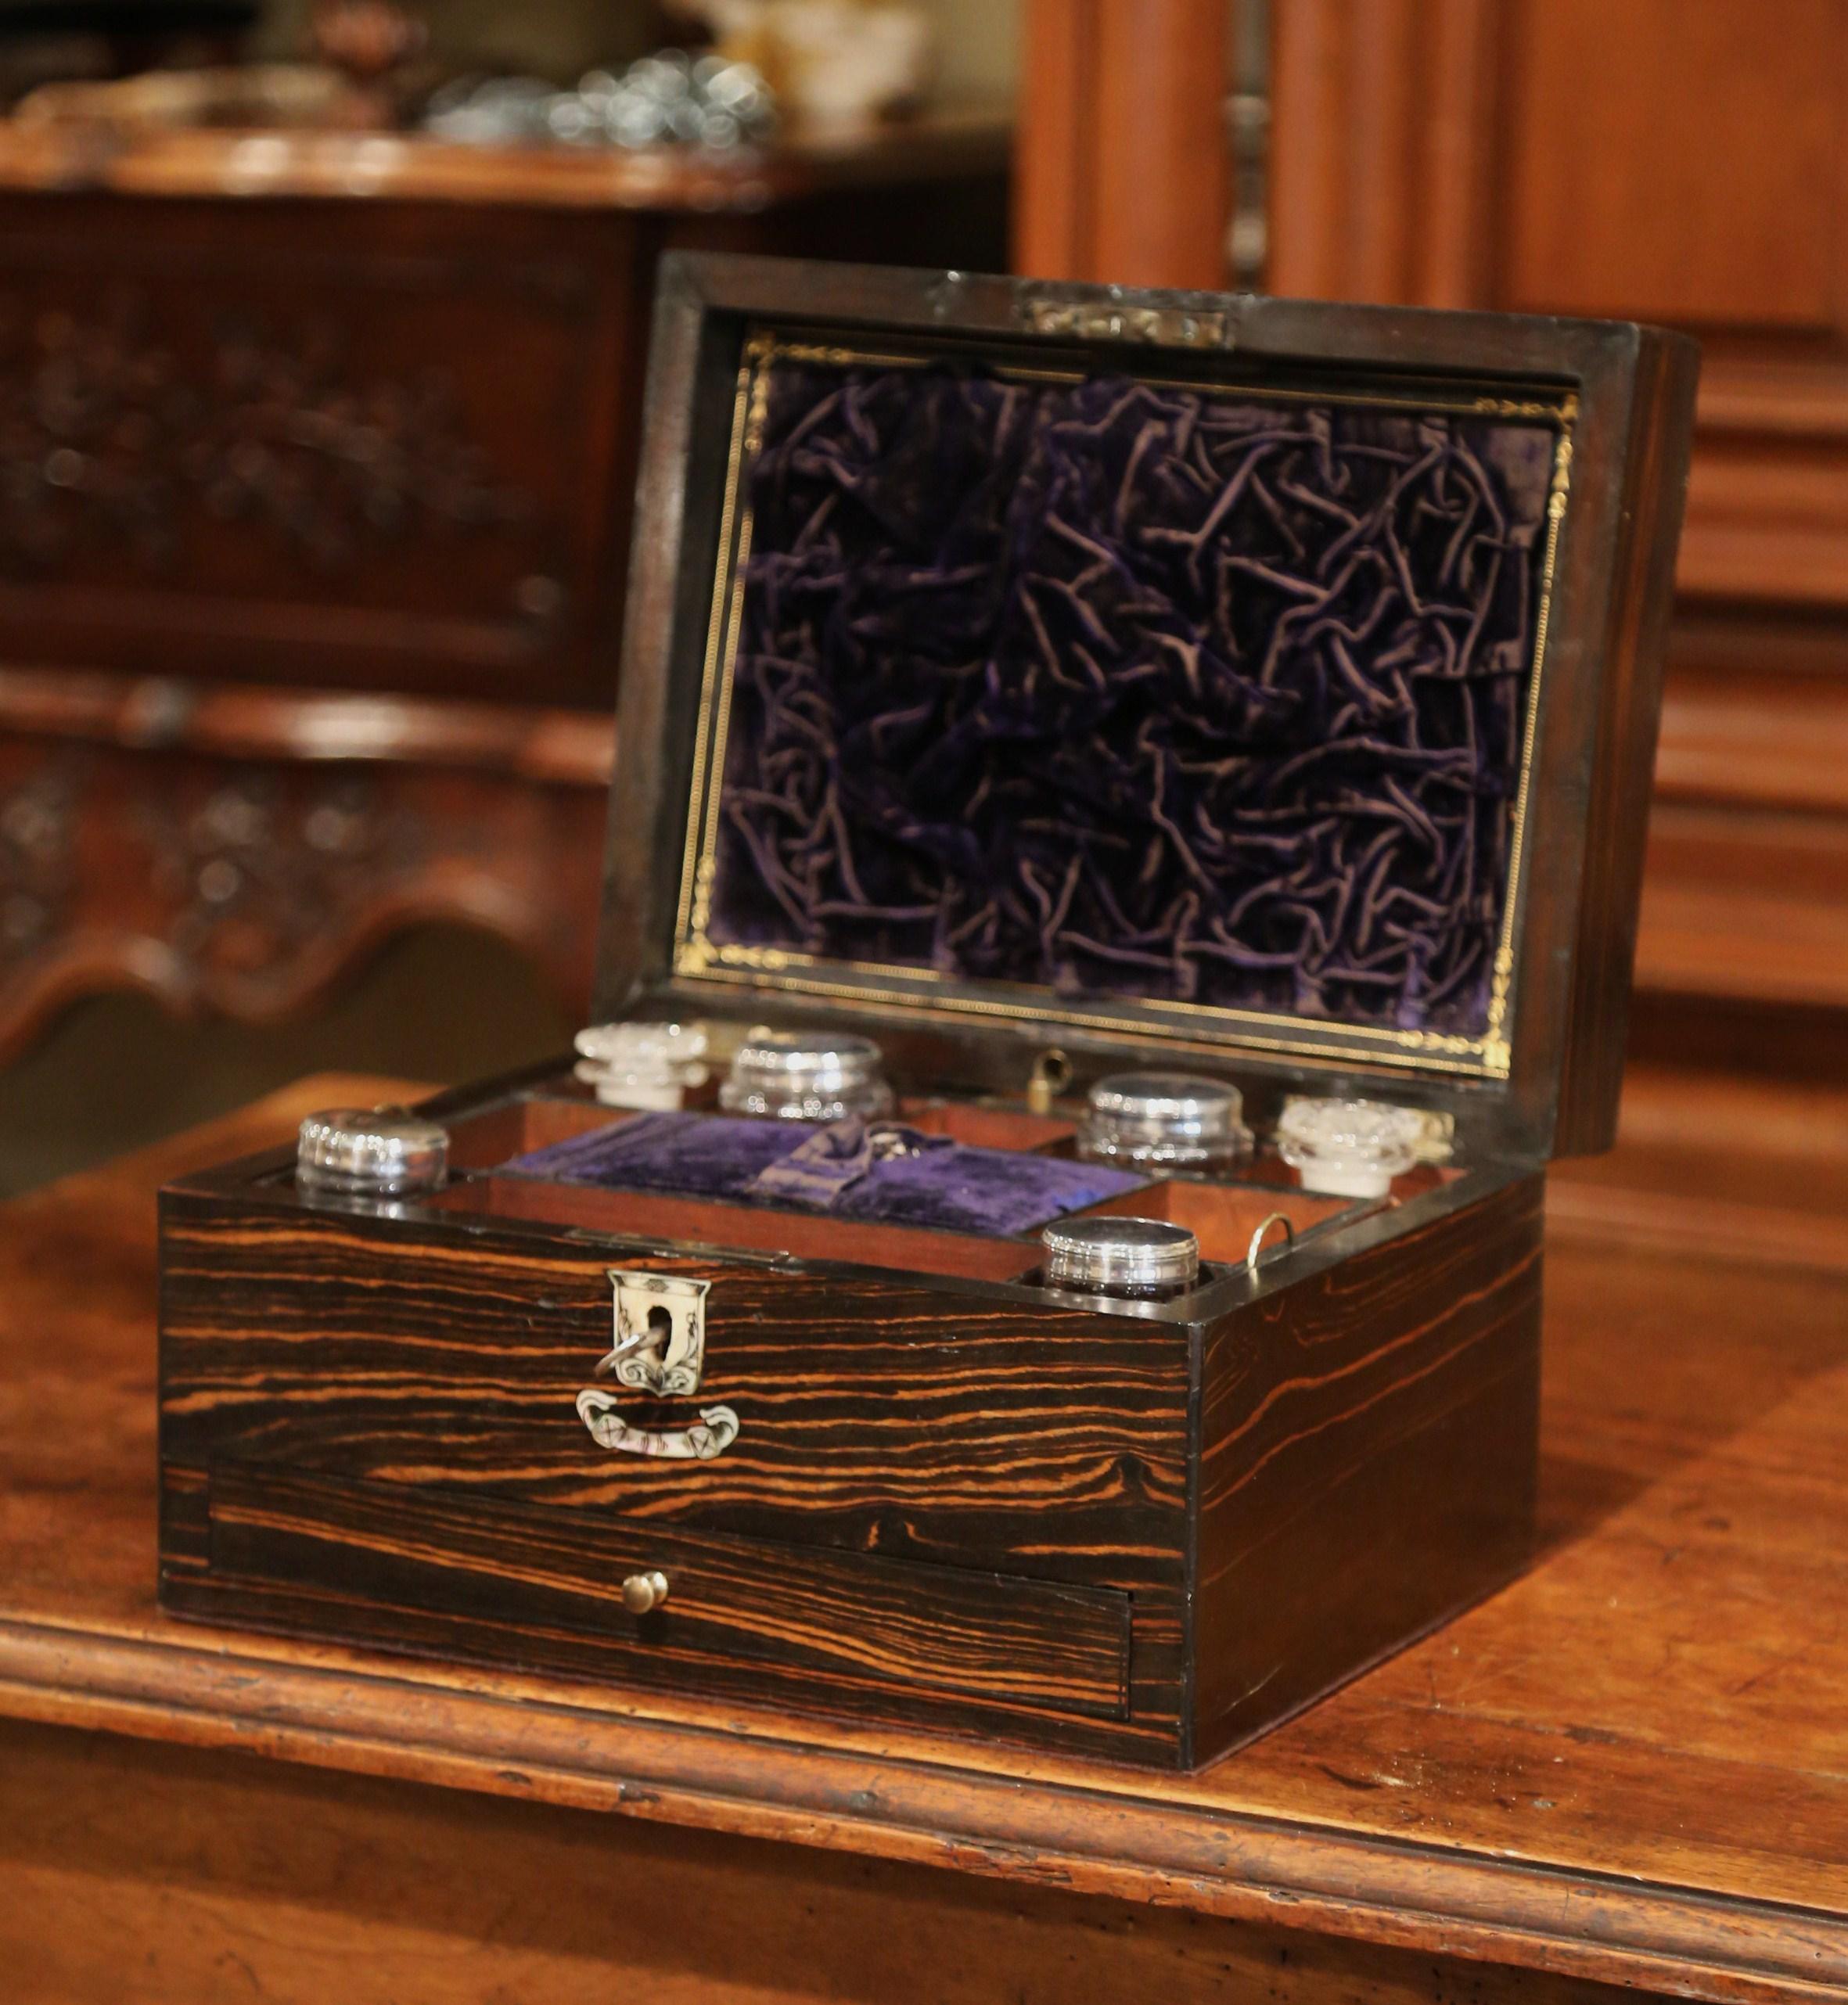 Cette magnifique boîte à bijoux ancienne a été fabriquée en France, vers 1870. La boîte est ornée d'un écusson en nacre sur le dessus et la face avant, et révèle plusieurs séparations à l'intérieur, tandis que les compartiments sont équipés de